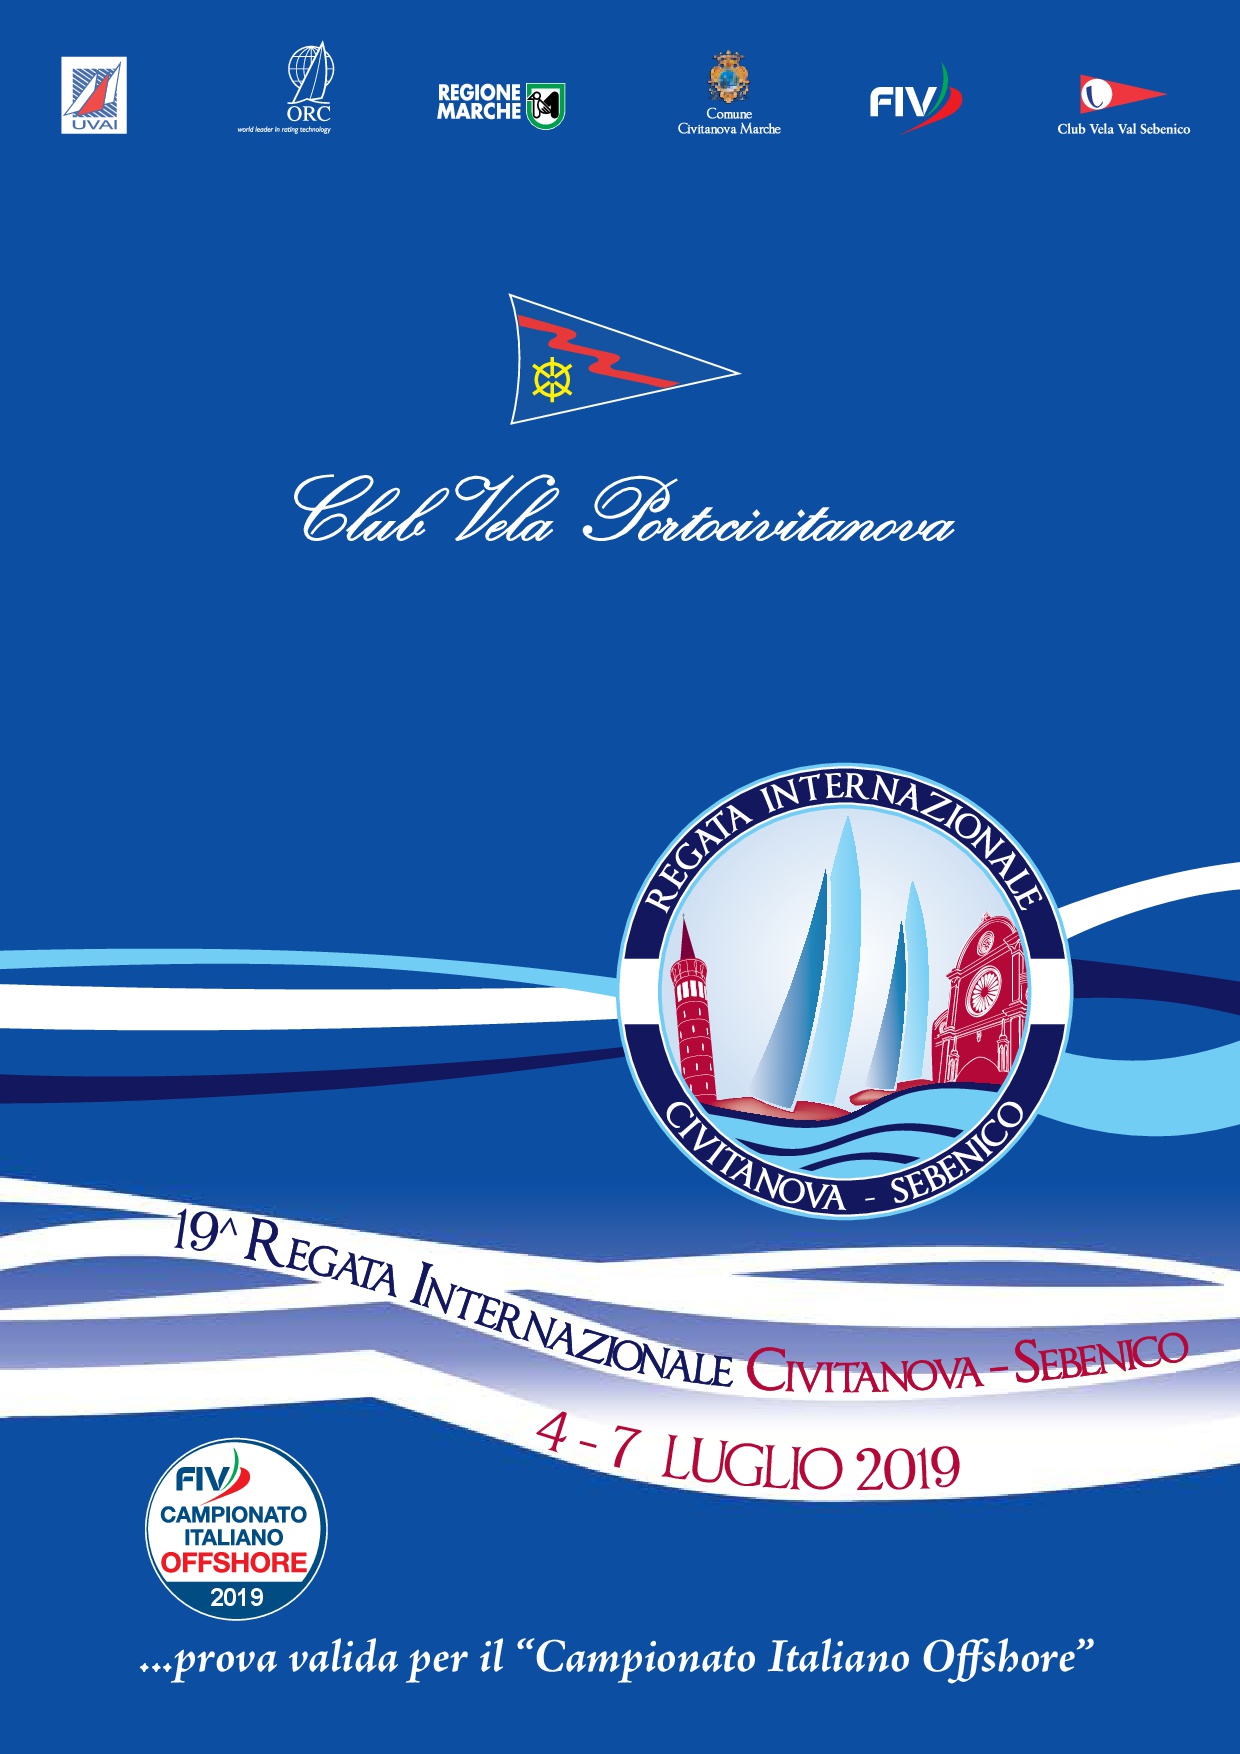 4 / 7 luglio – CIVITANOVA SEBENICO prova valida per il Campionato Italiano Offshore (valida Palo d’Oro 2019)